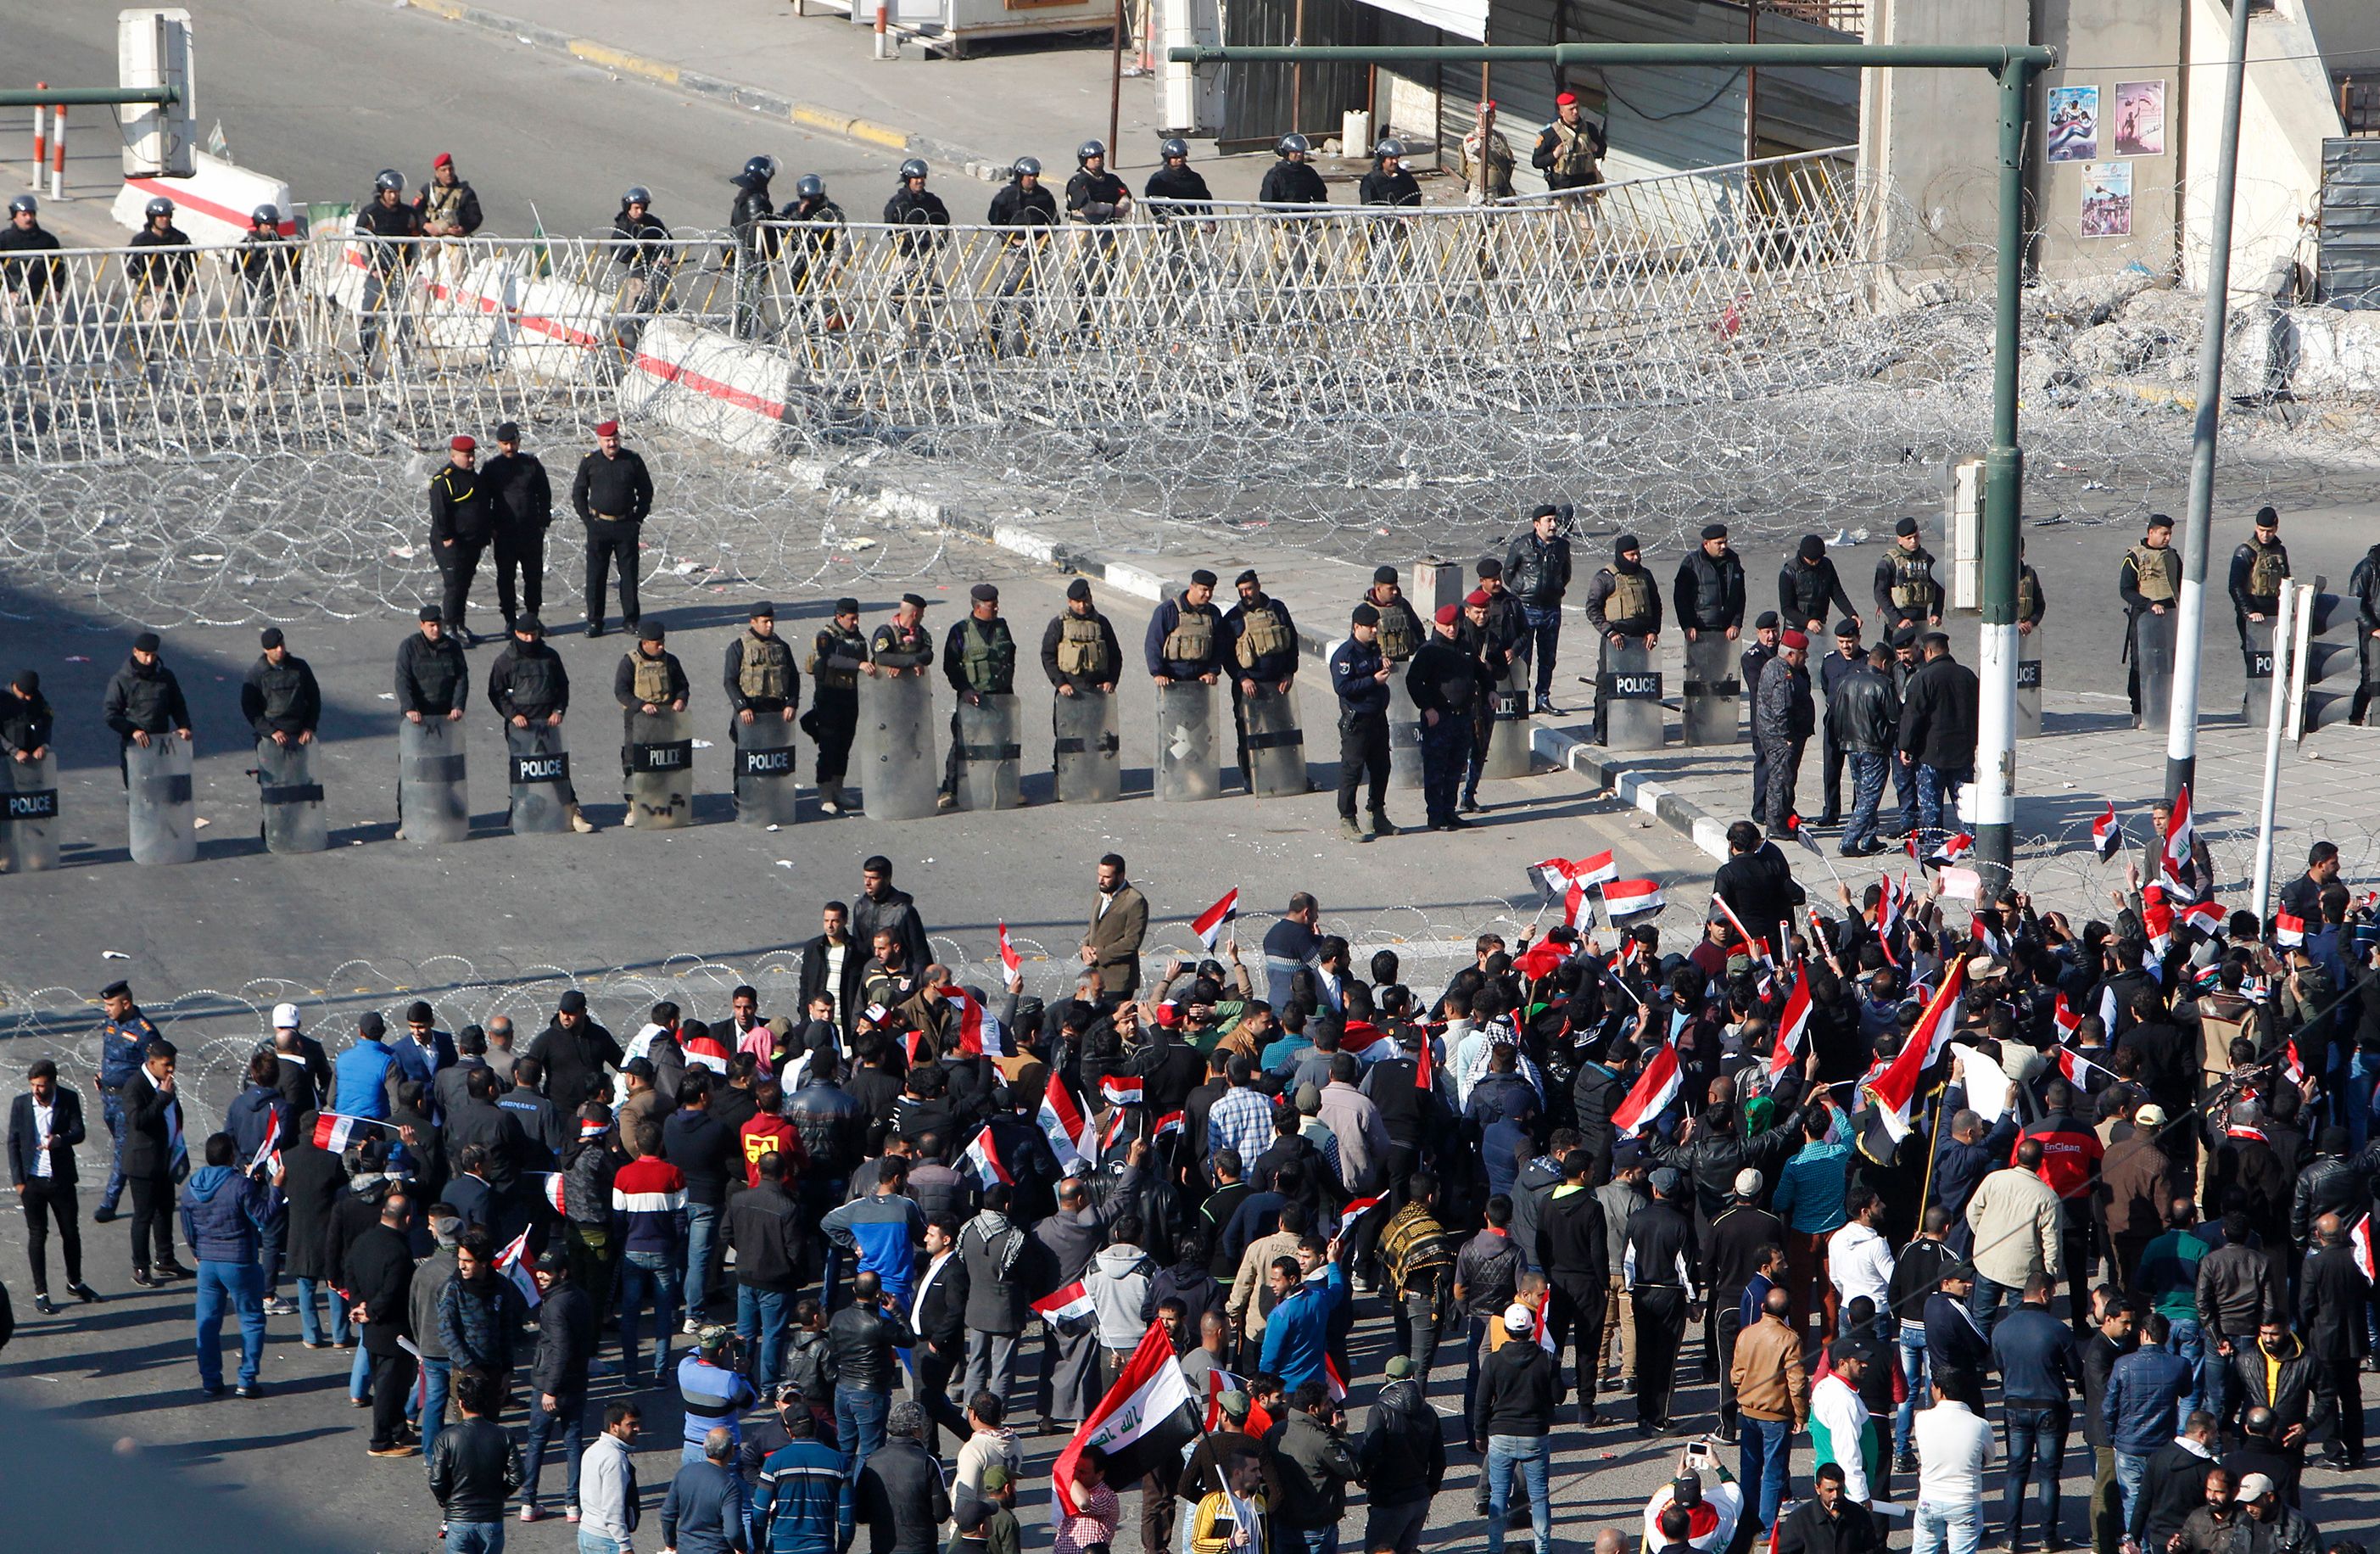 الأمن يضع متاريس وحواجز لمنع تقدم المتظاهرين إلى المقرات الحكومية وسط بغداد